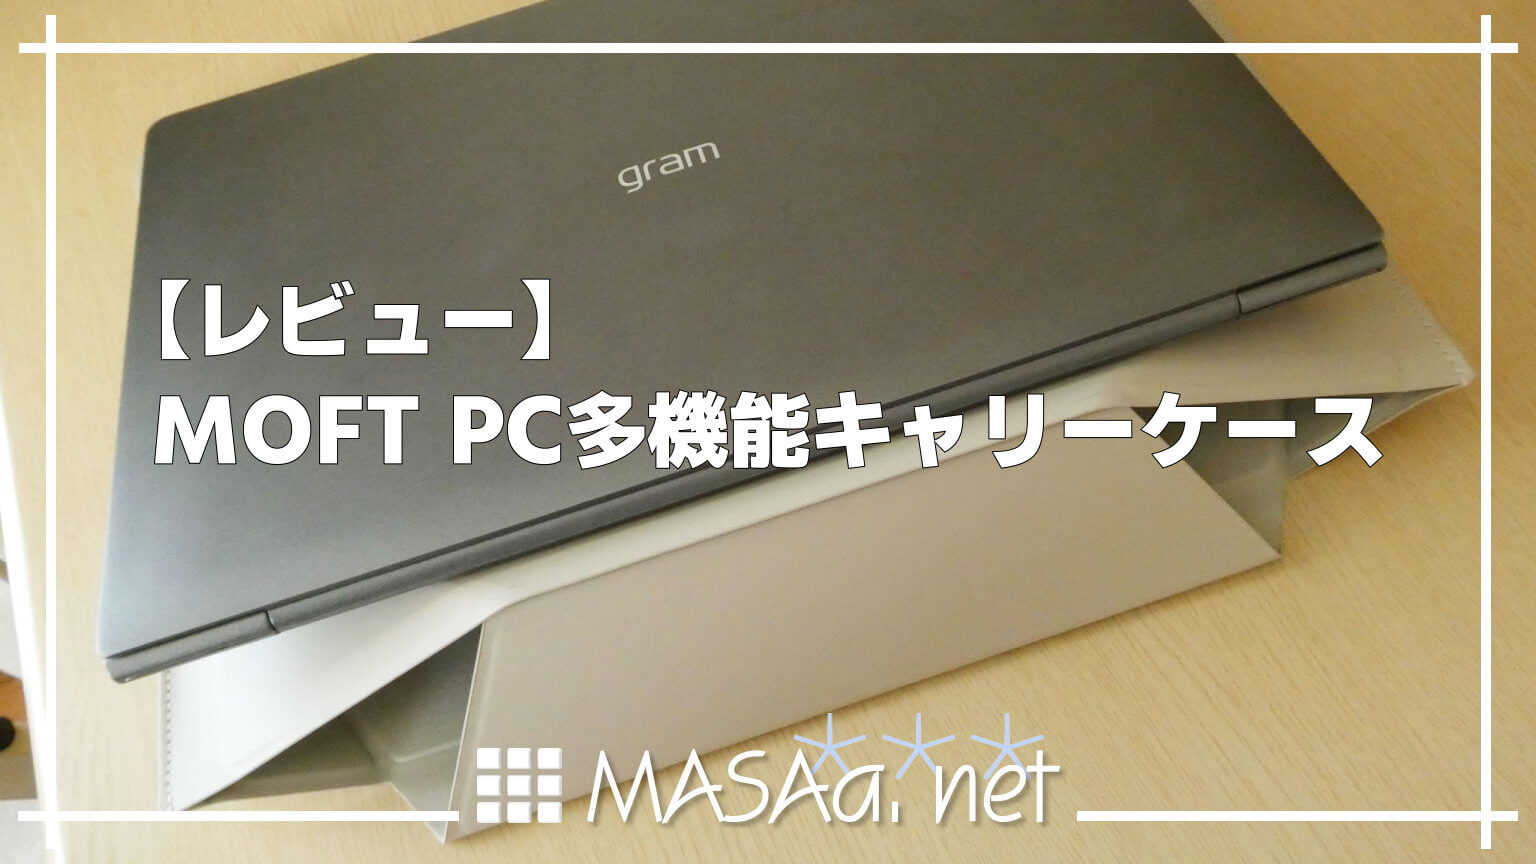 【レビュー】MOFT PC多機能キャリーケース